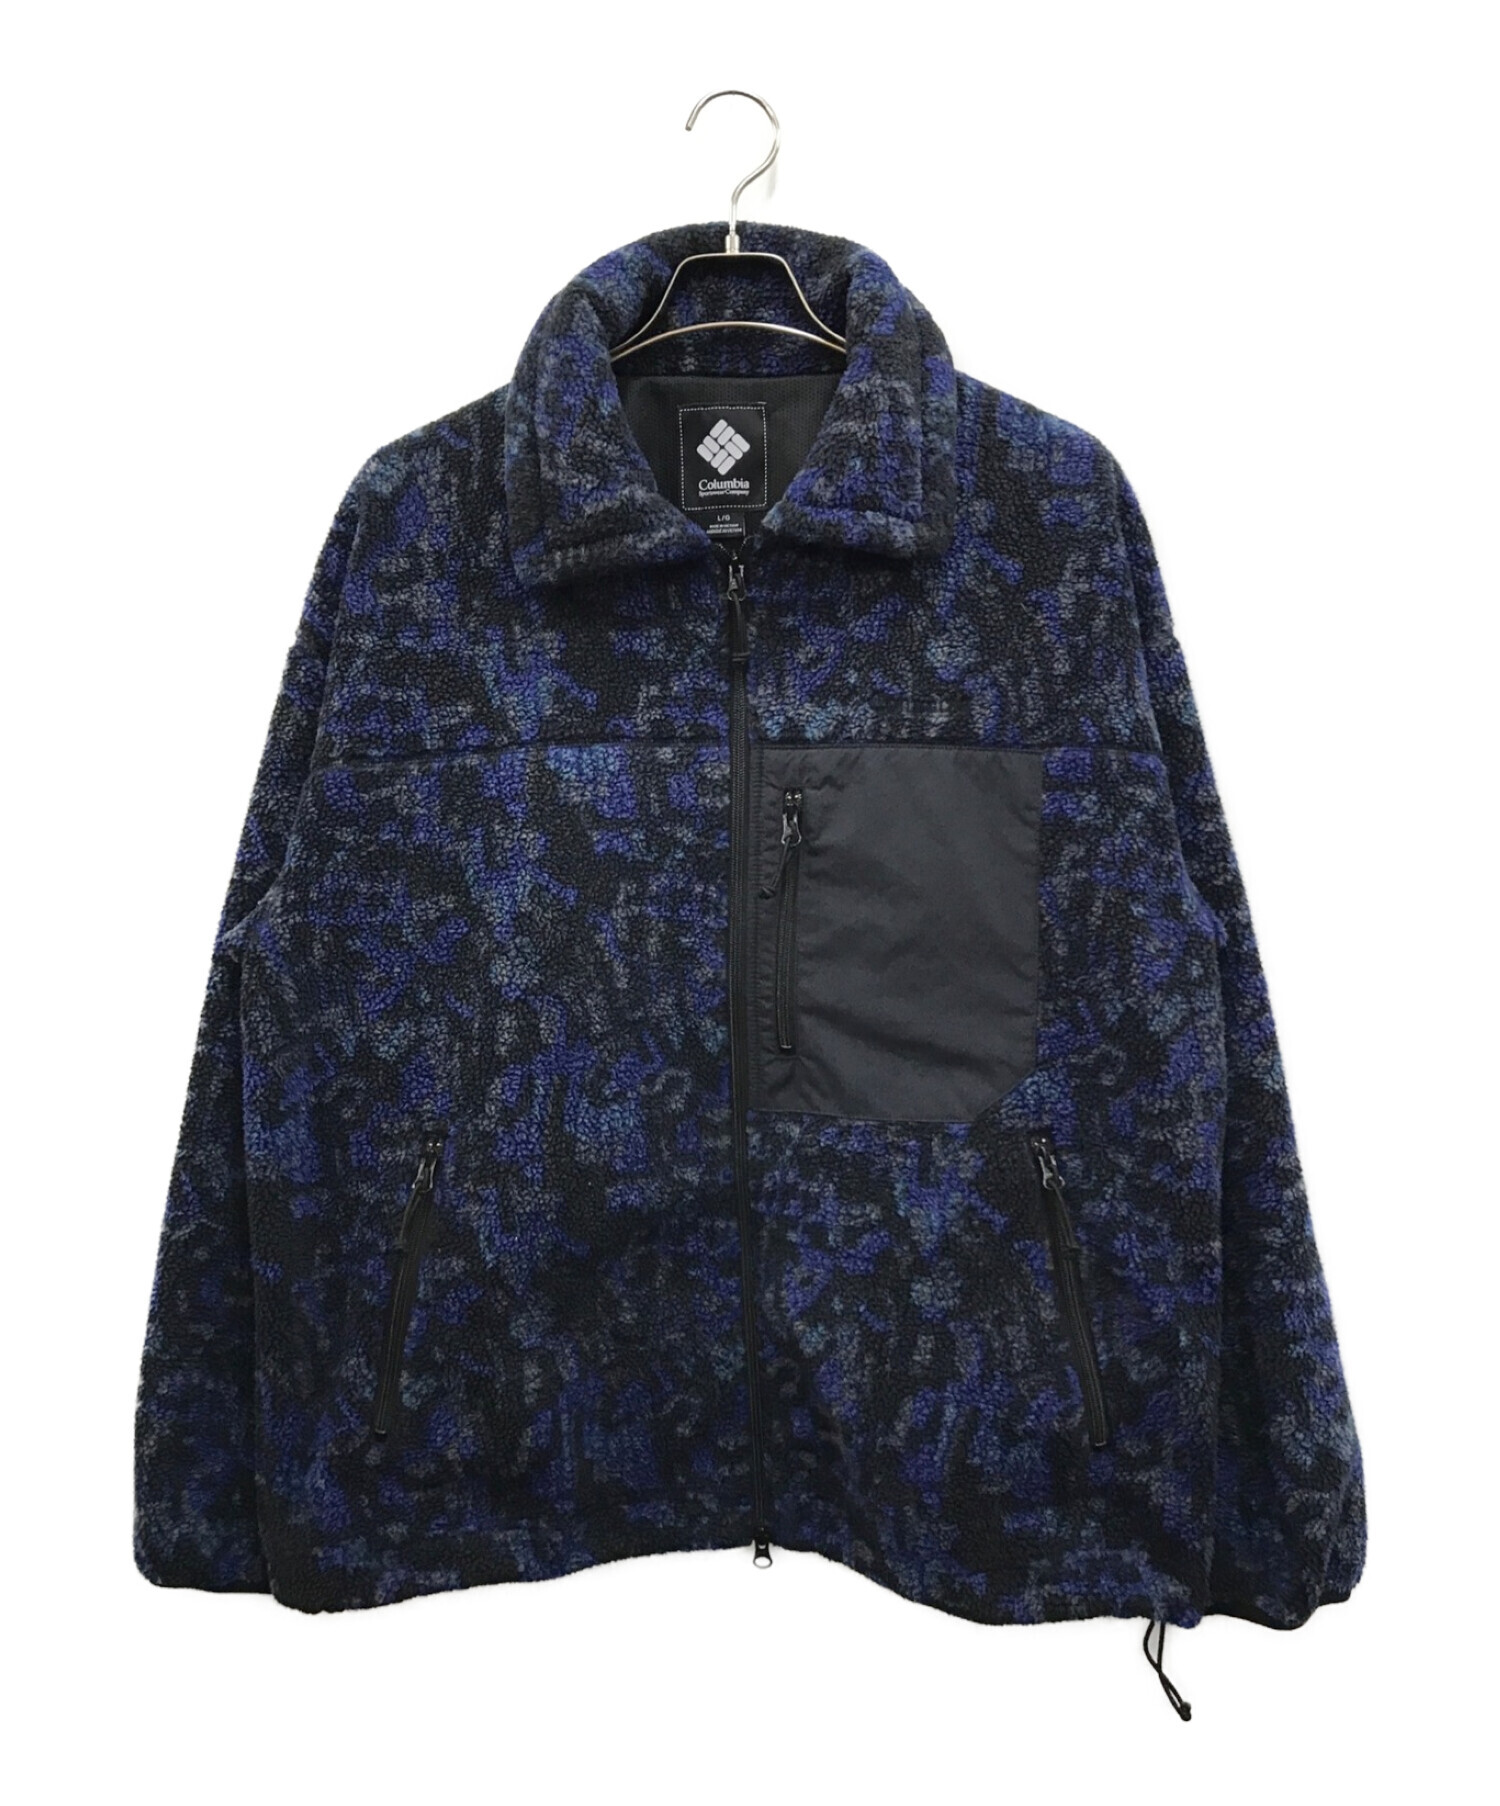 COLUMBIA BLACK LABEL (コロンビアブラックレーベル) フリースジャケット ブルー サイズ:L